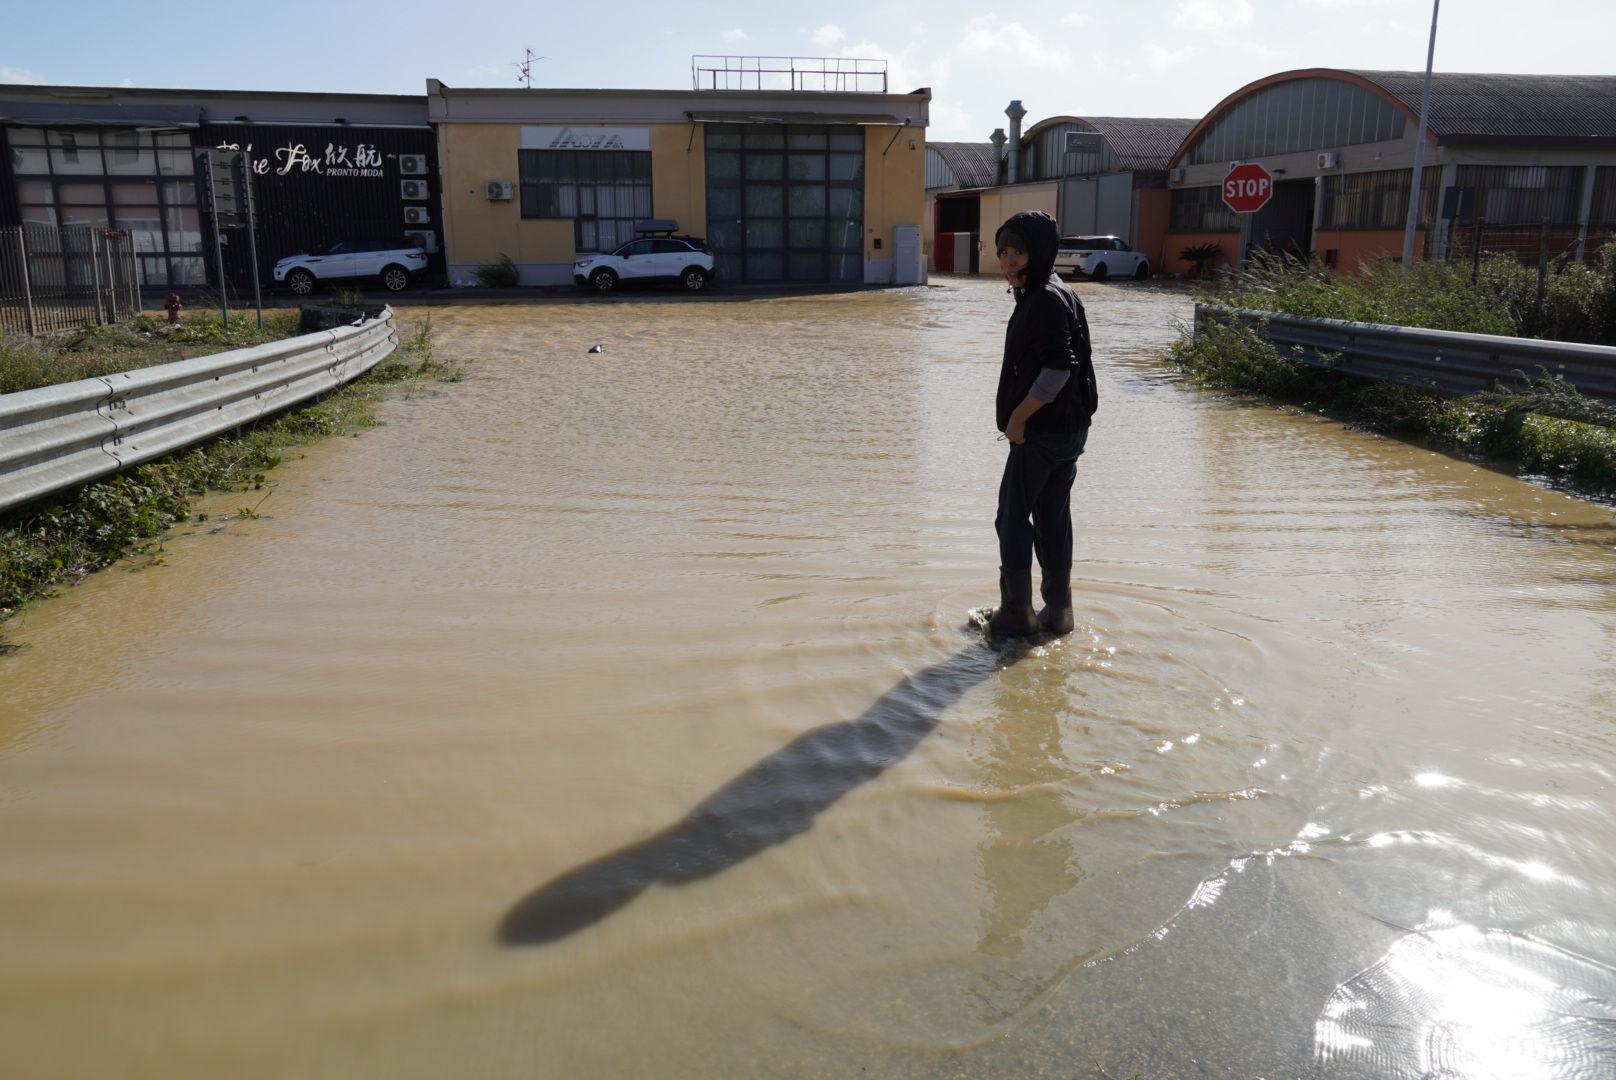 Tempesta Ciaran provoca campi allagati e isolamento aziende, allarme Coldiretti.